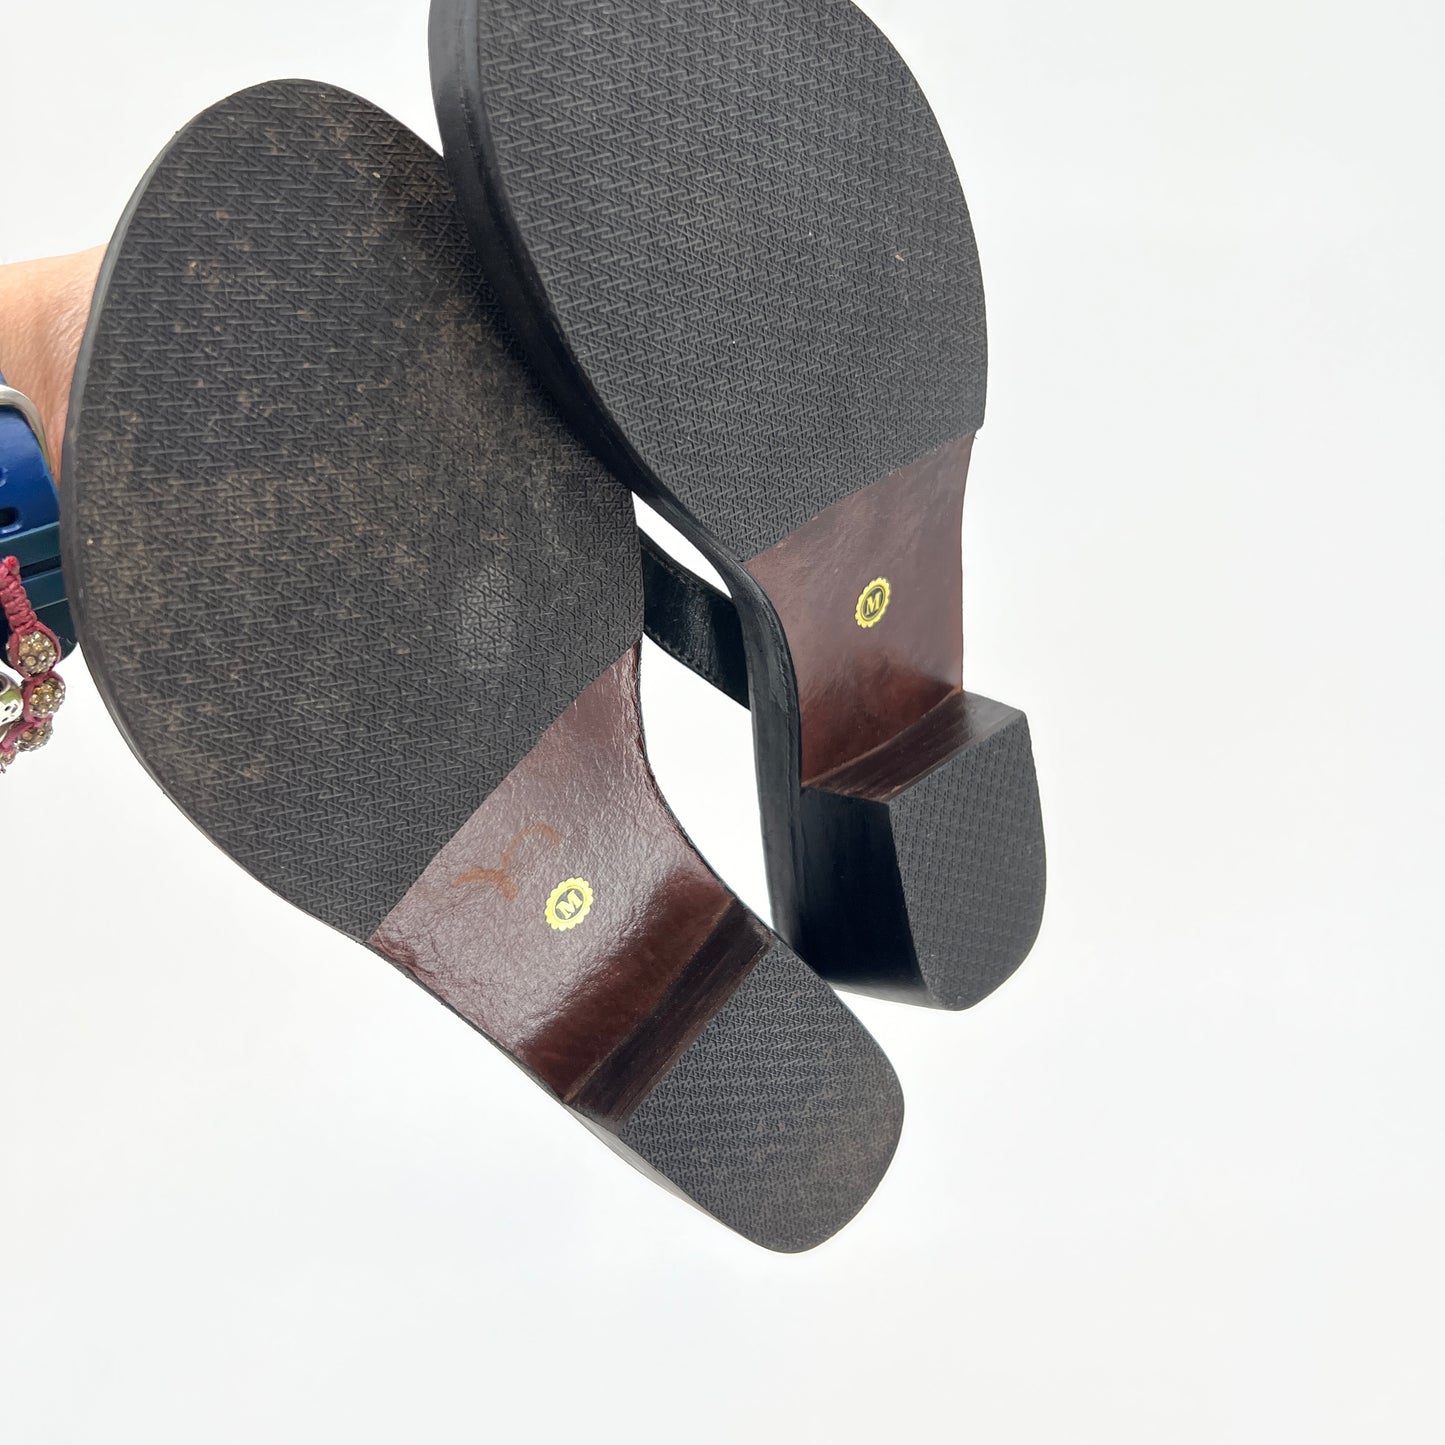 Susan Mango Tropical Flip Flops Sandals M (7-8)